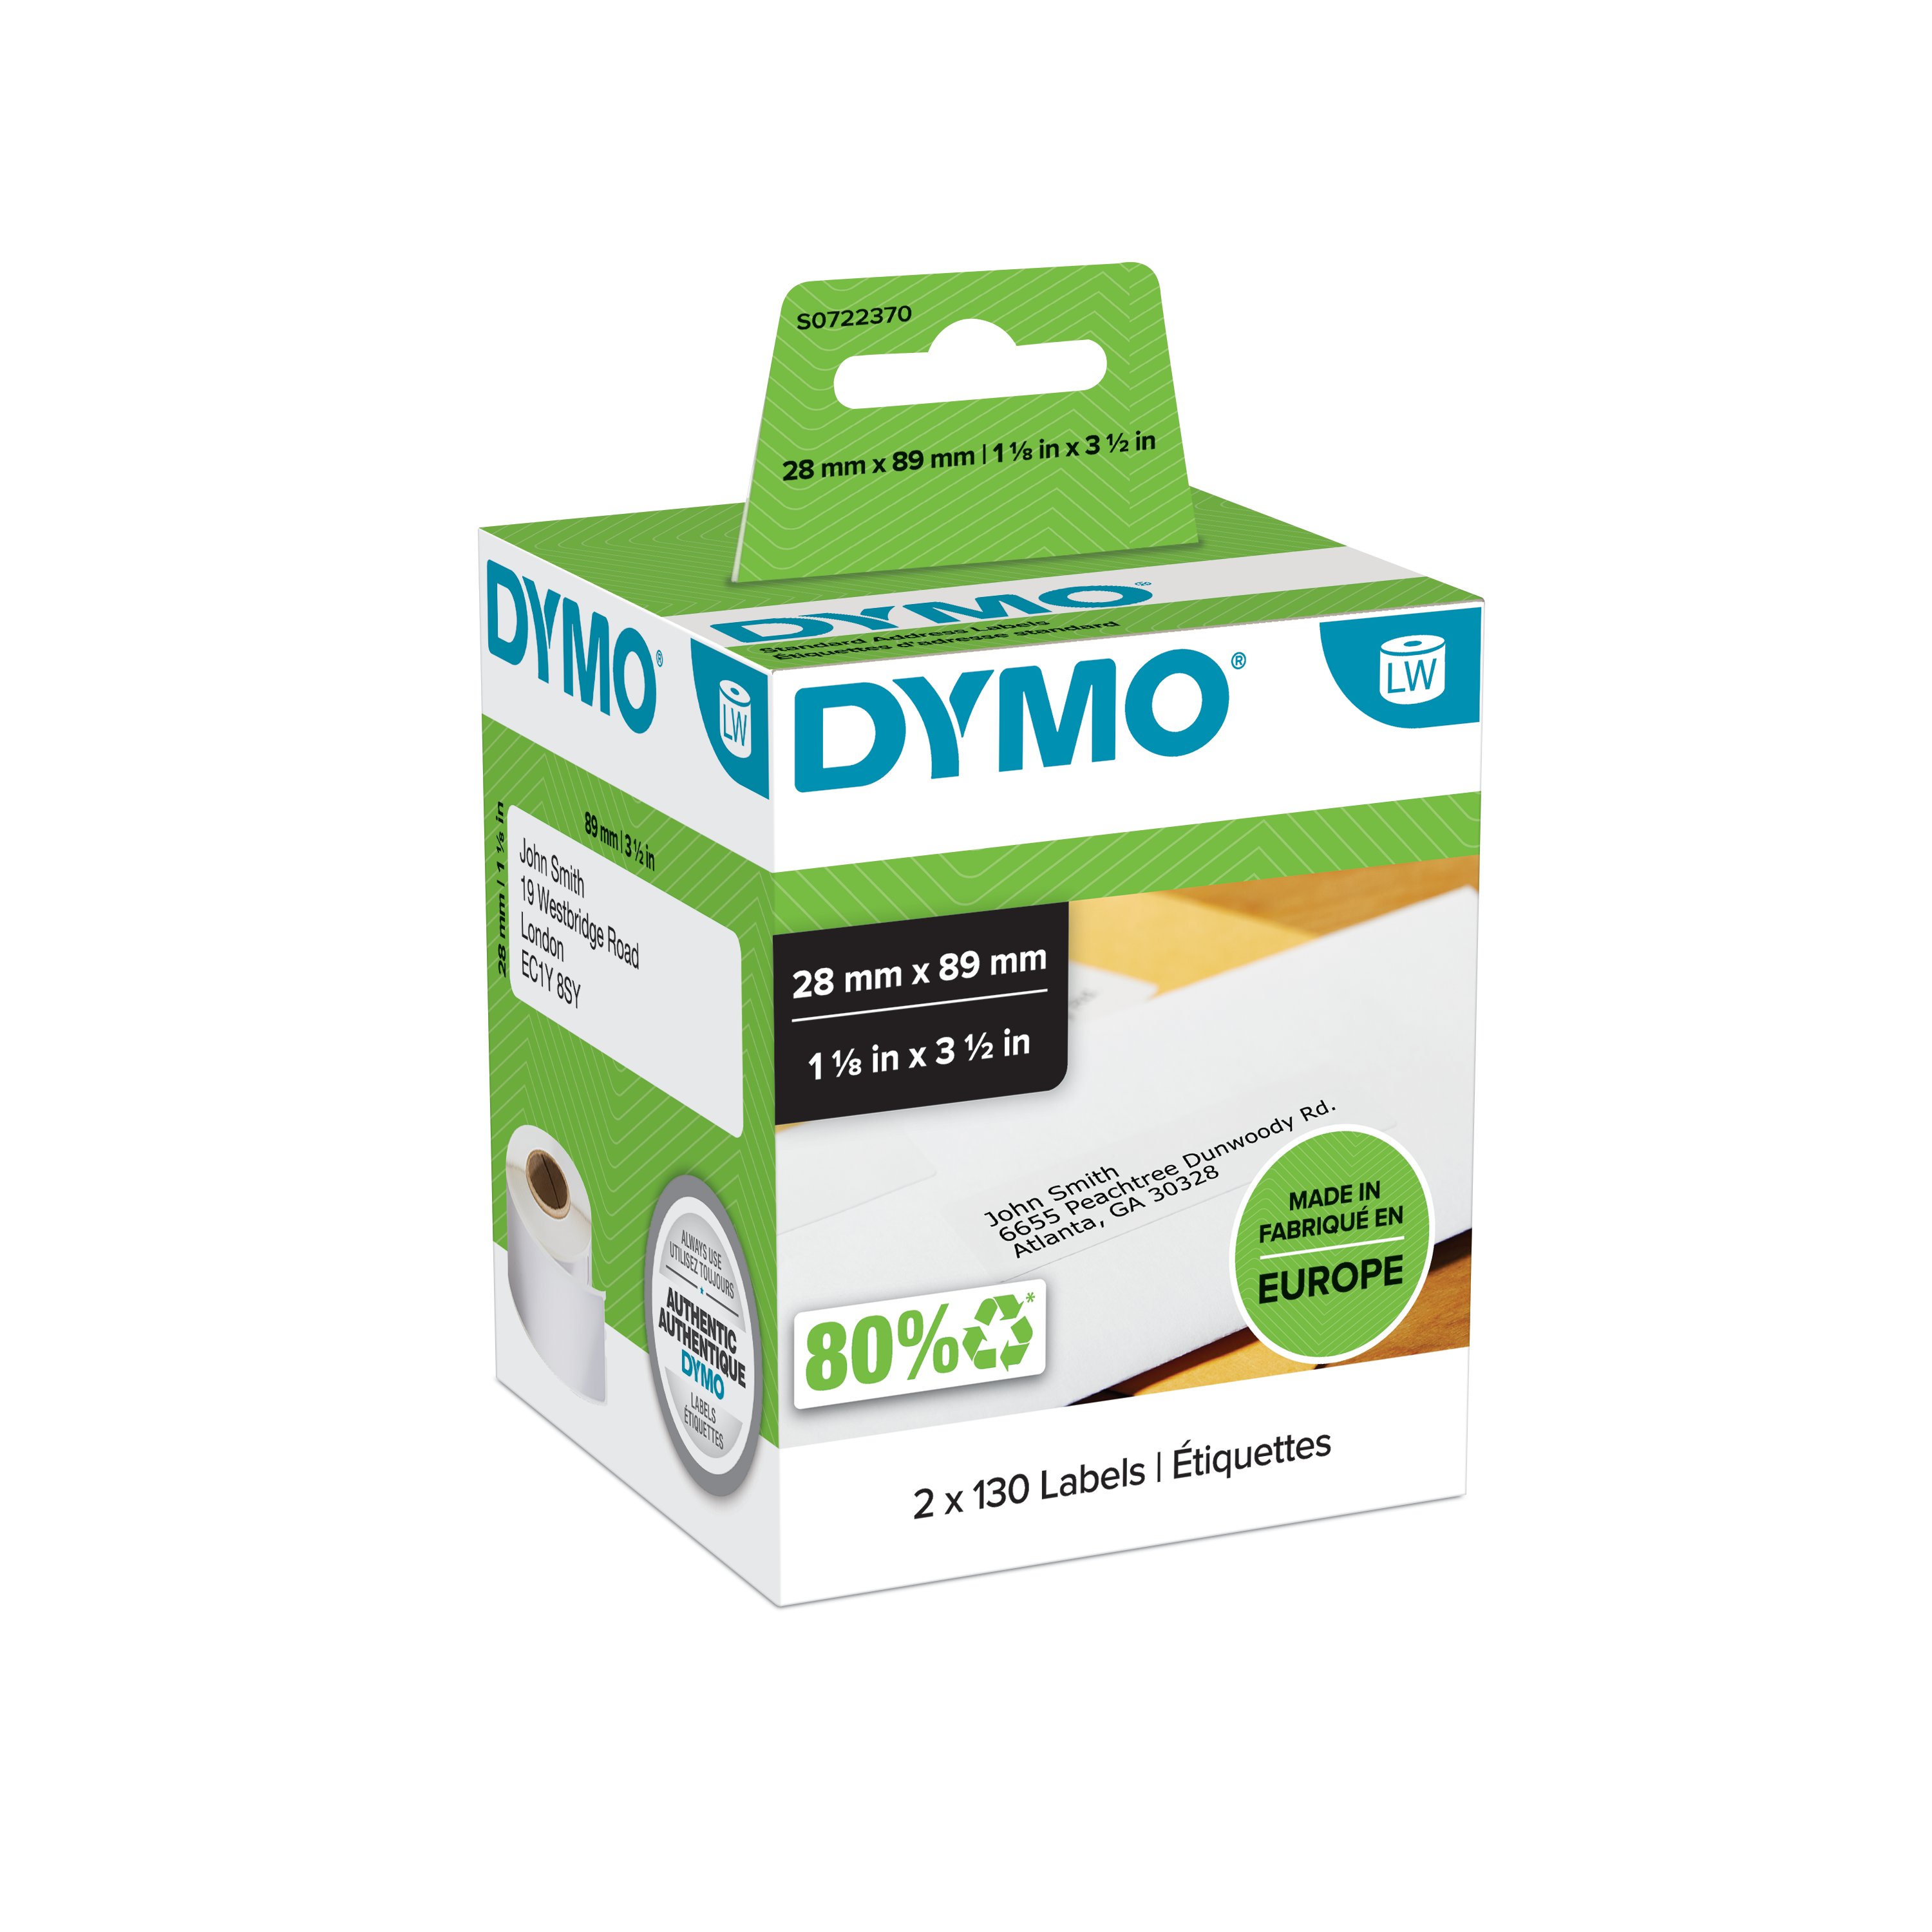 DYMO LW Adres Etiketi, 260 etiket/paket